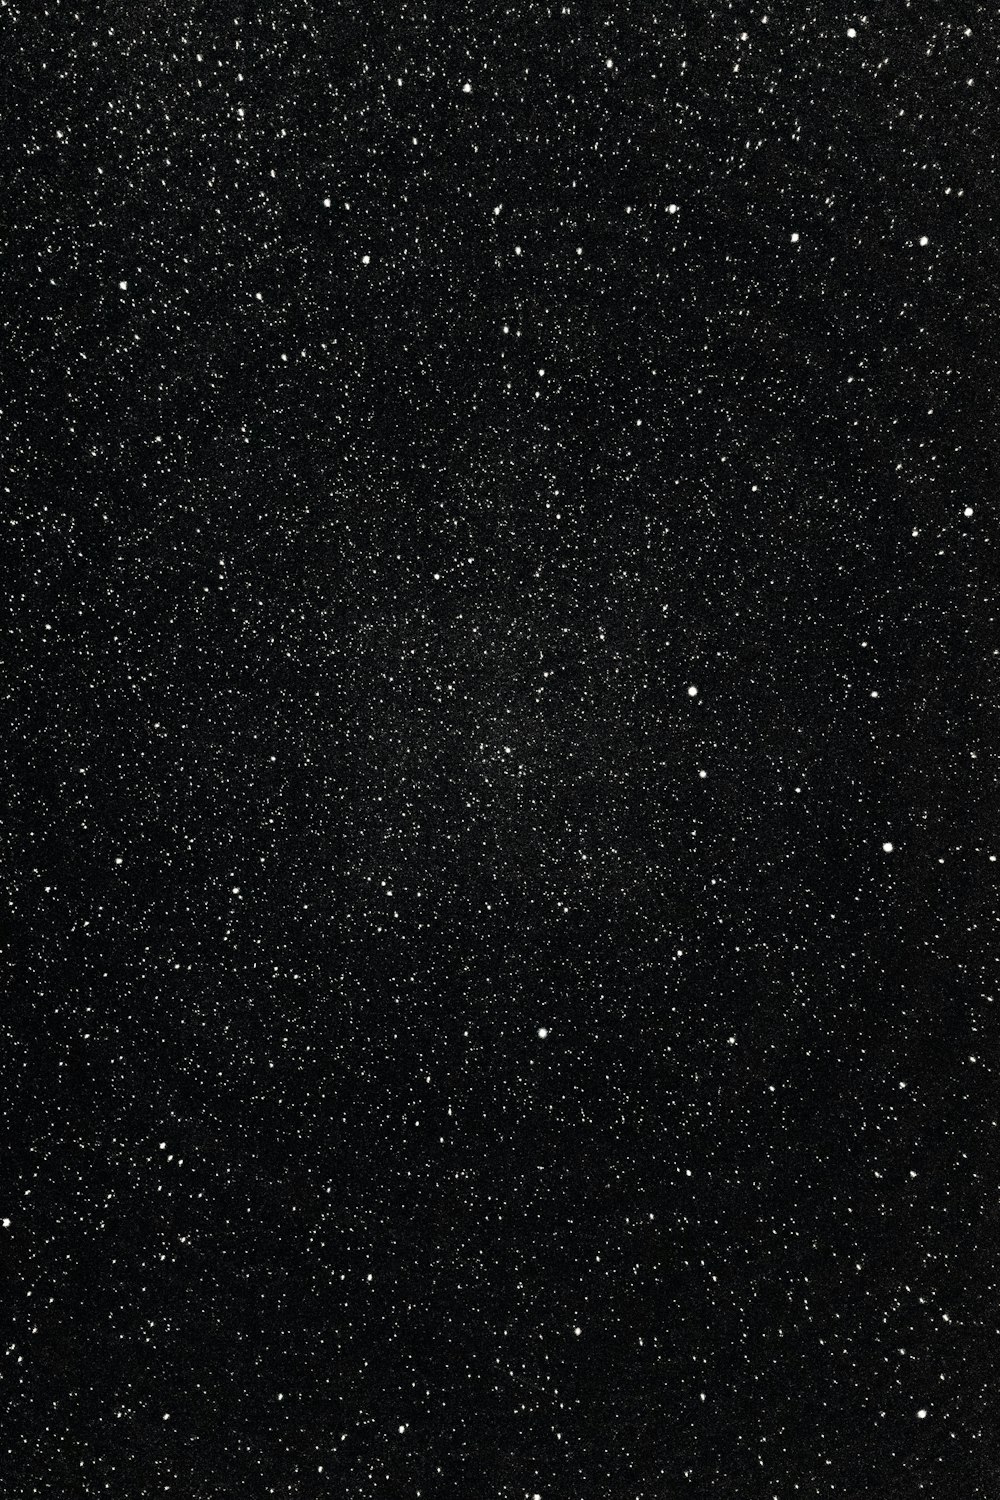 Una foto en blanco y negro del cielo nocturno